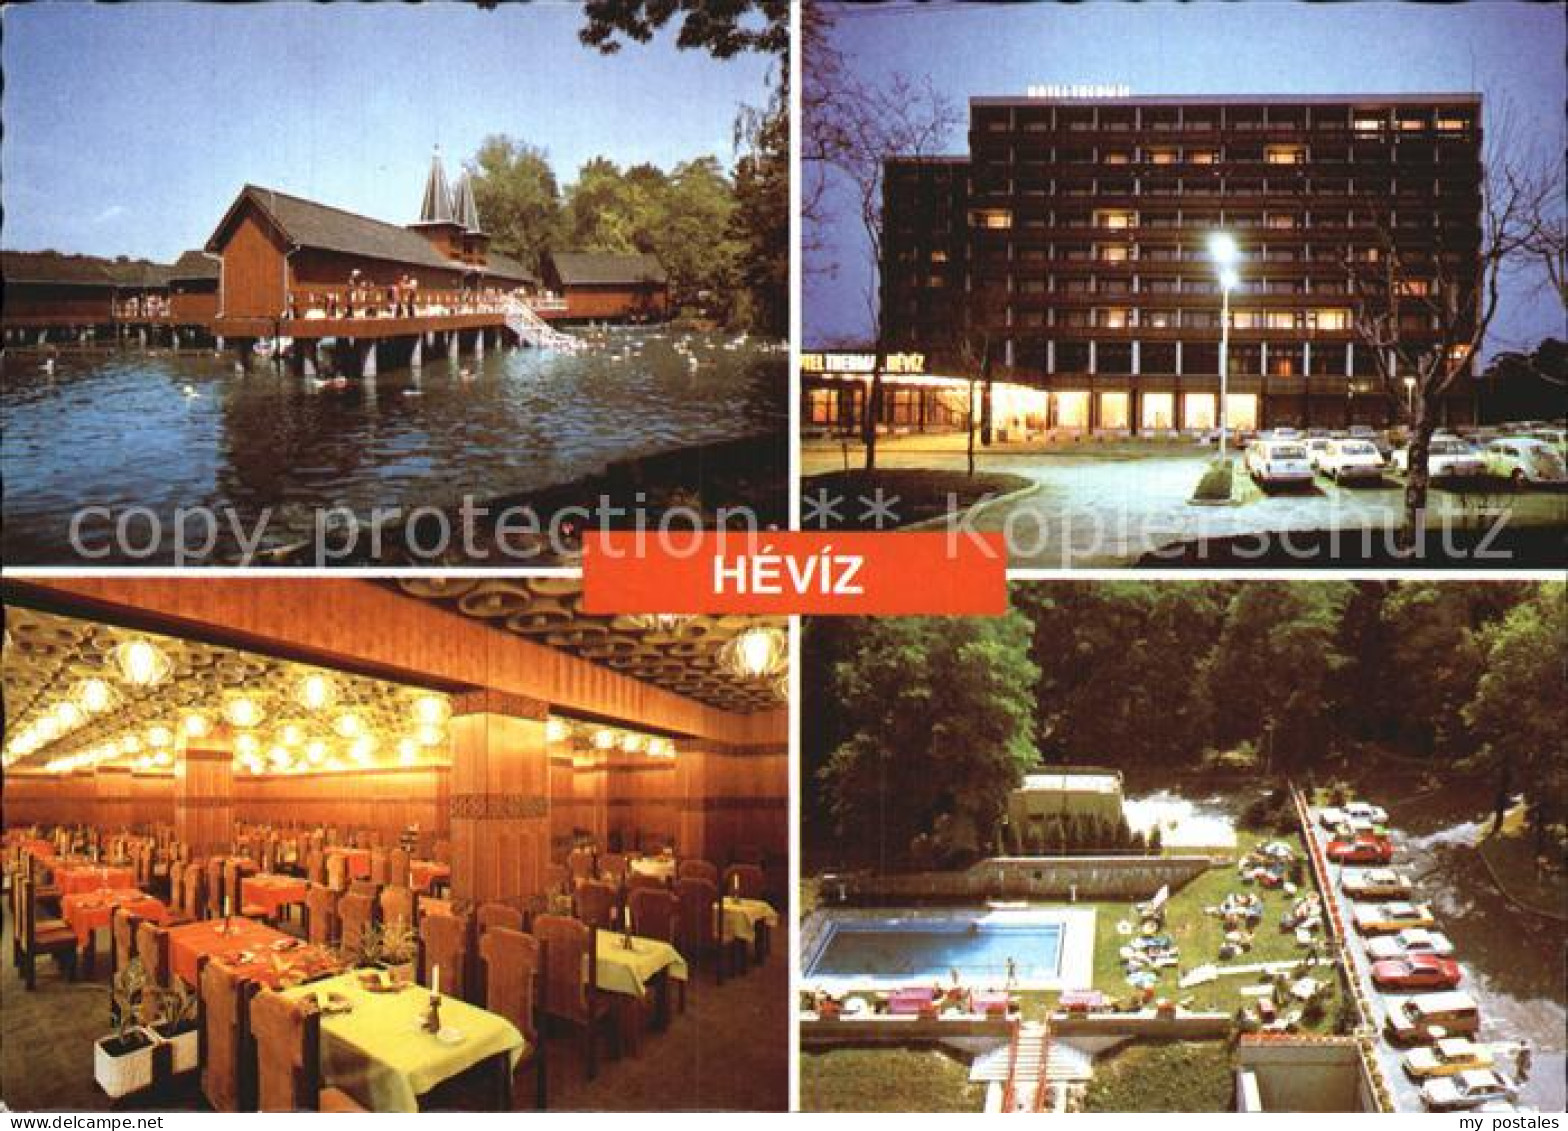 72527684 Hevizgyogyfuerdoe Heilbad Thermalsee Hotel Restaurant Swimming Pool Ung - Hongrie